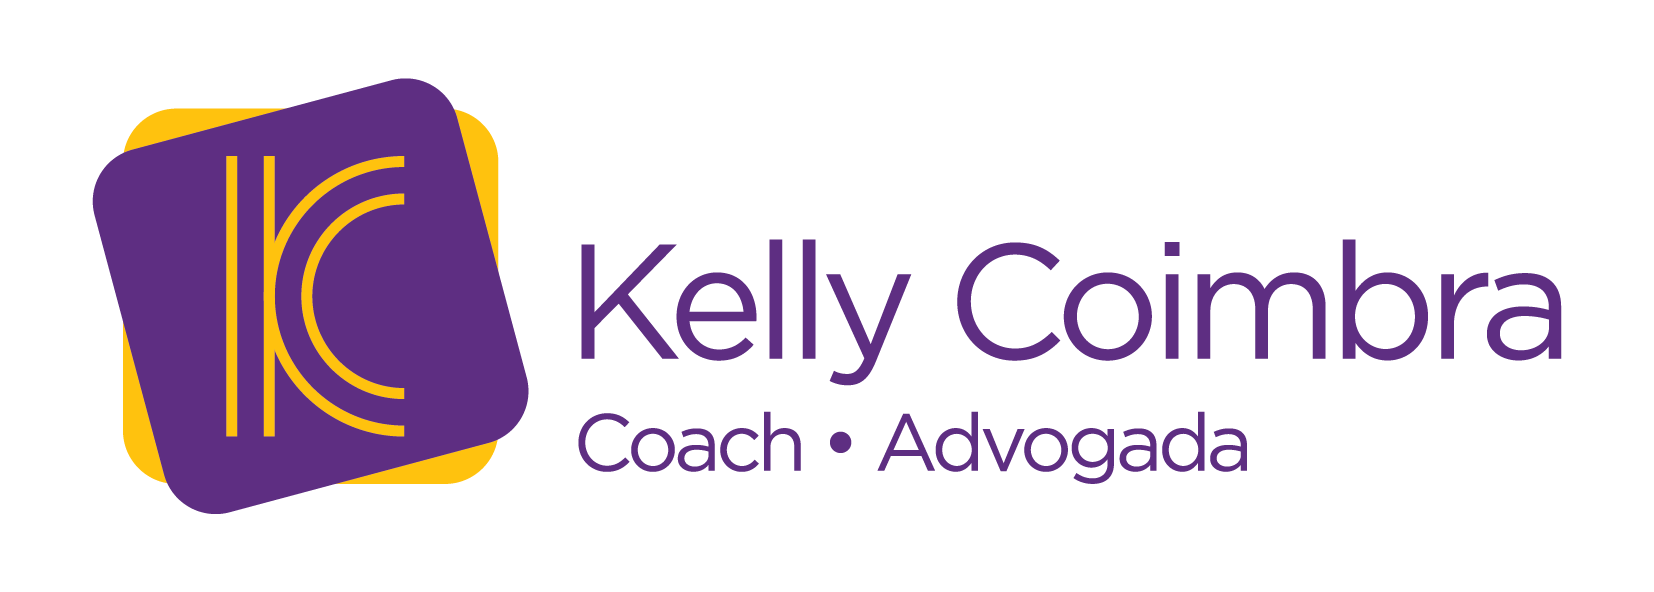 Kelly Coimbra Coach e Advogada